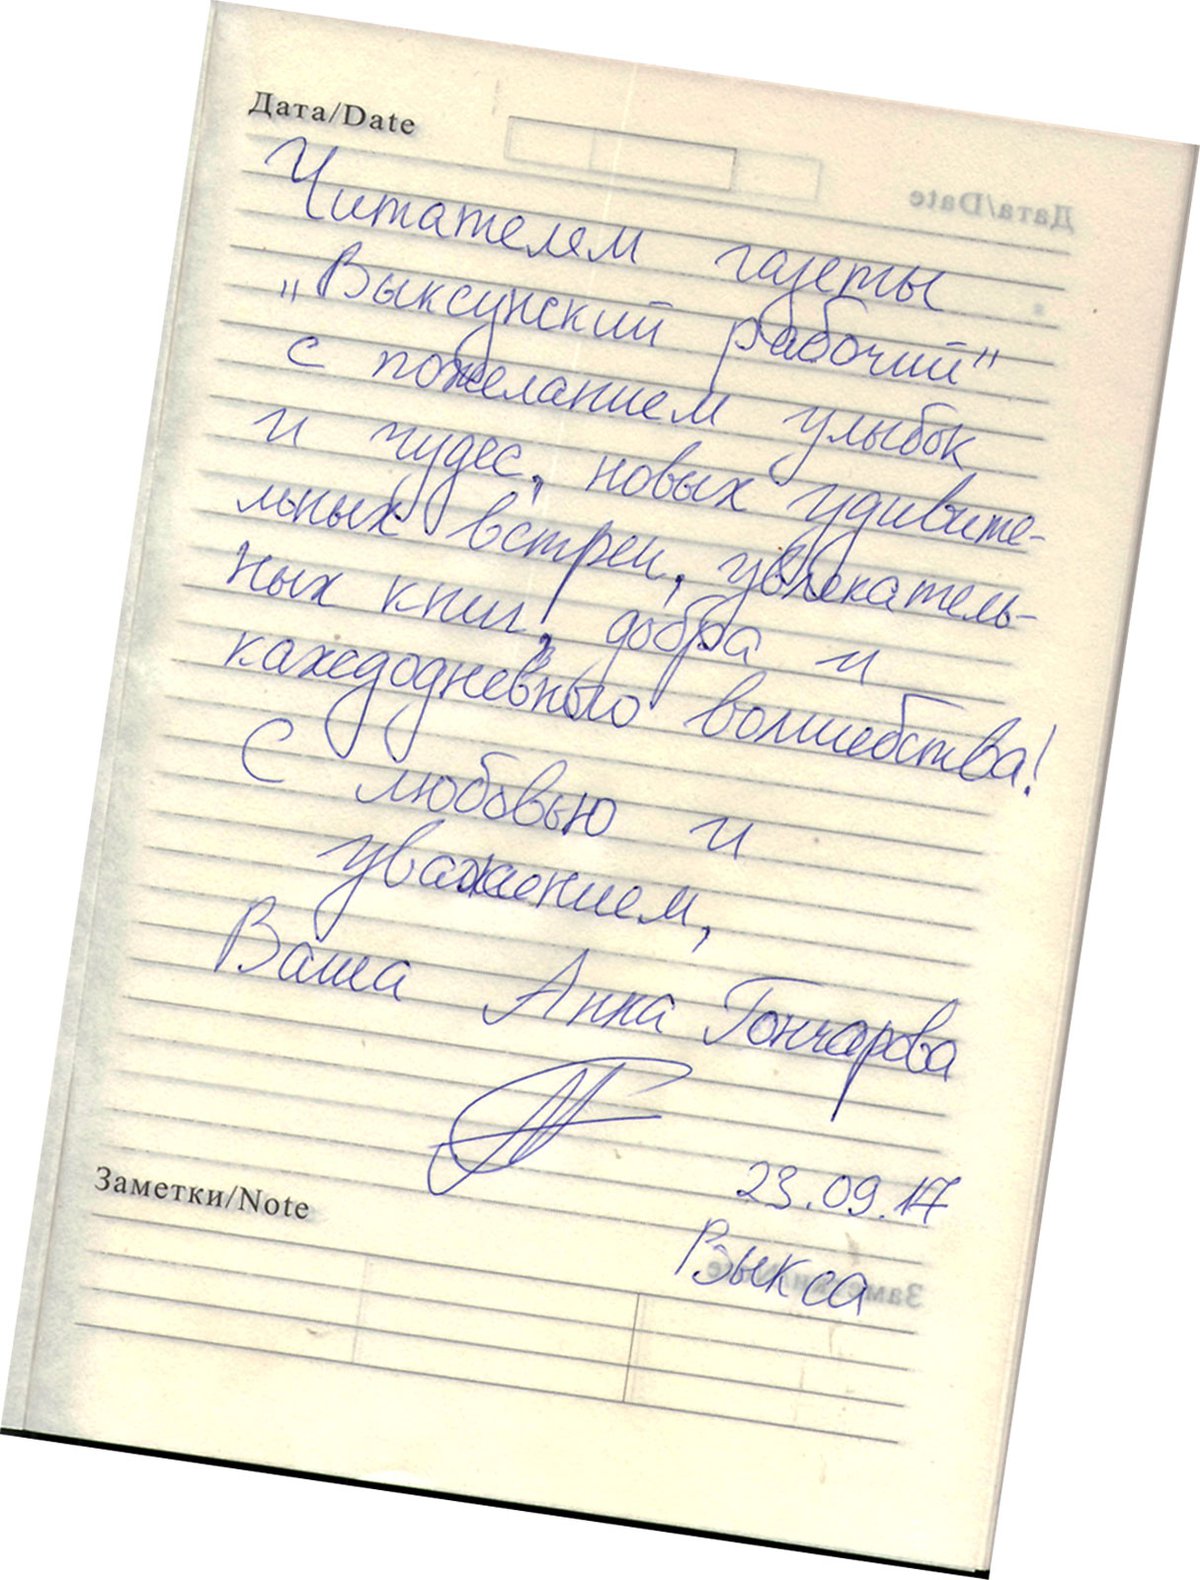 Автограф Гончаровой Анны (Выкса, 2017 г.)